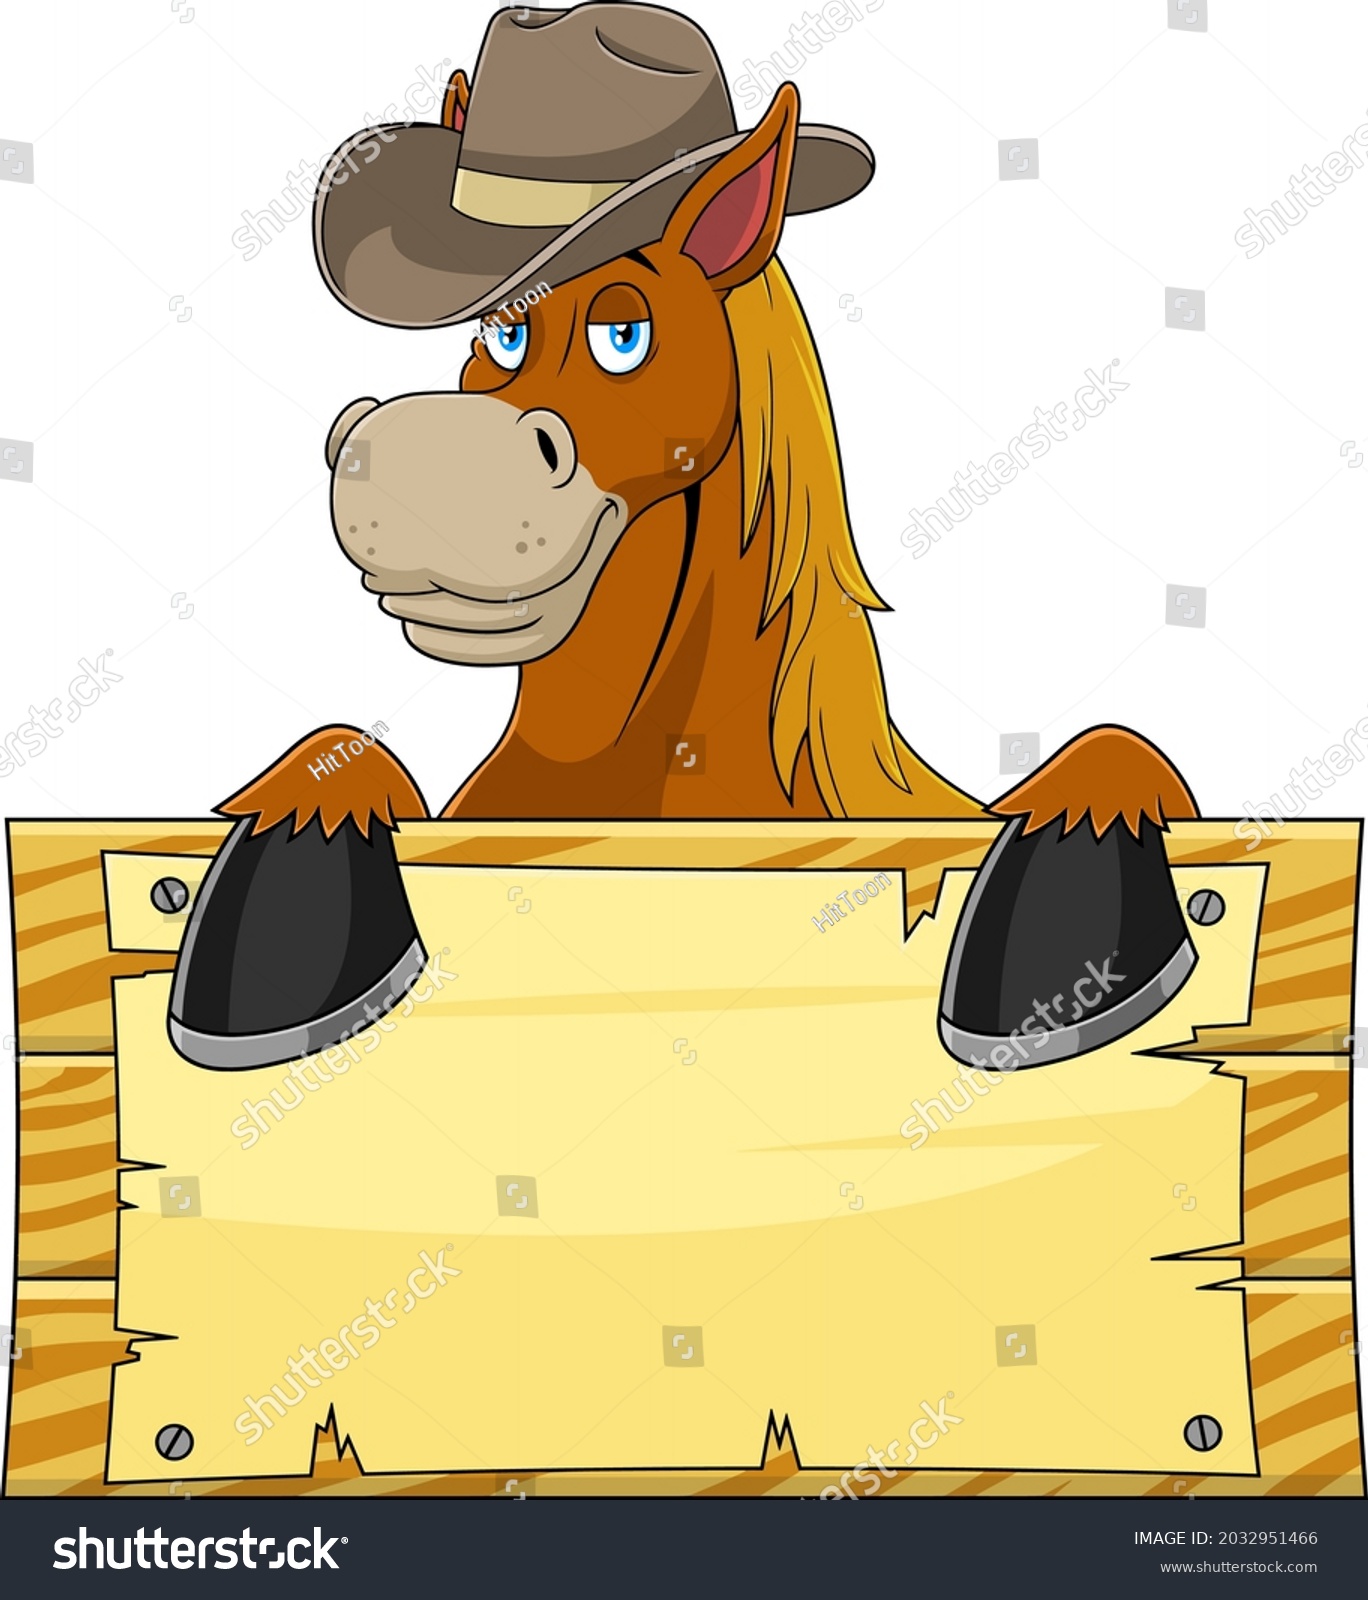 Inhibere det er alt skam Horse Cartoon Mascot Character Cowboy Hat Stock-vektor (royaltyfri)  2032951466